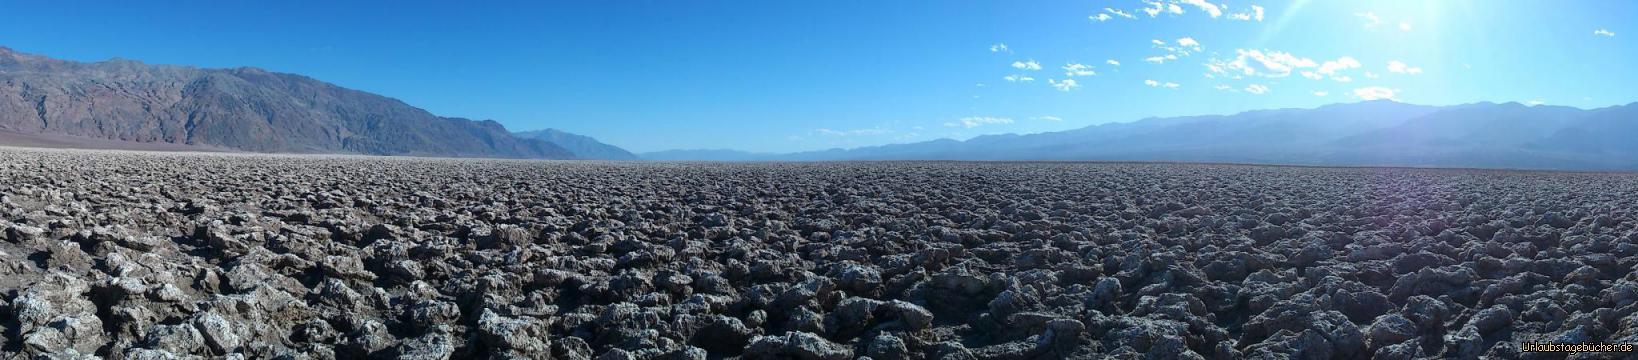 Devils Golf Course: im Death Valley National Park liegt Devil’s Golf Course mit seinen zerklüfteten und spitzen Salzstrukturen so weit das Auge reicht